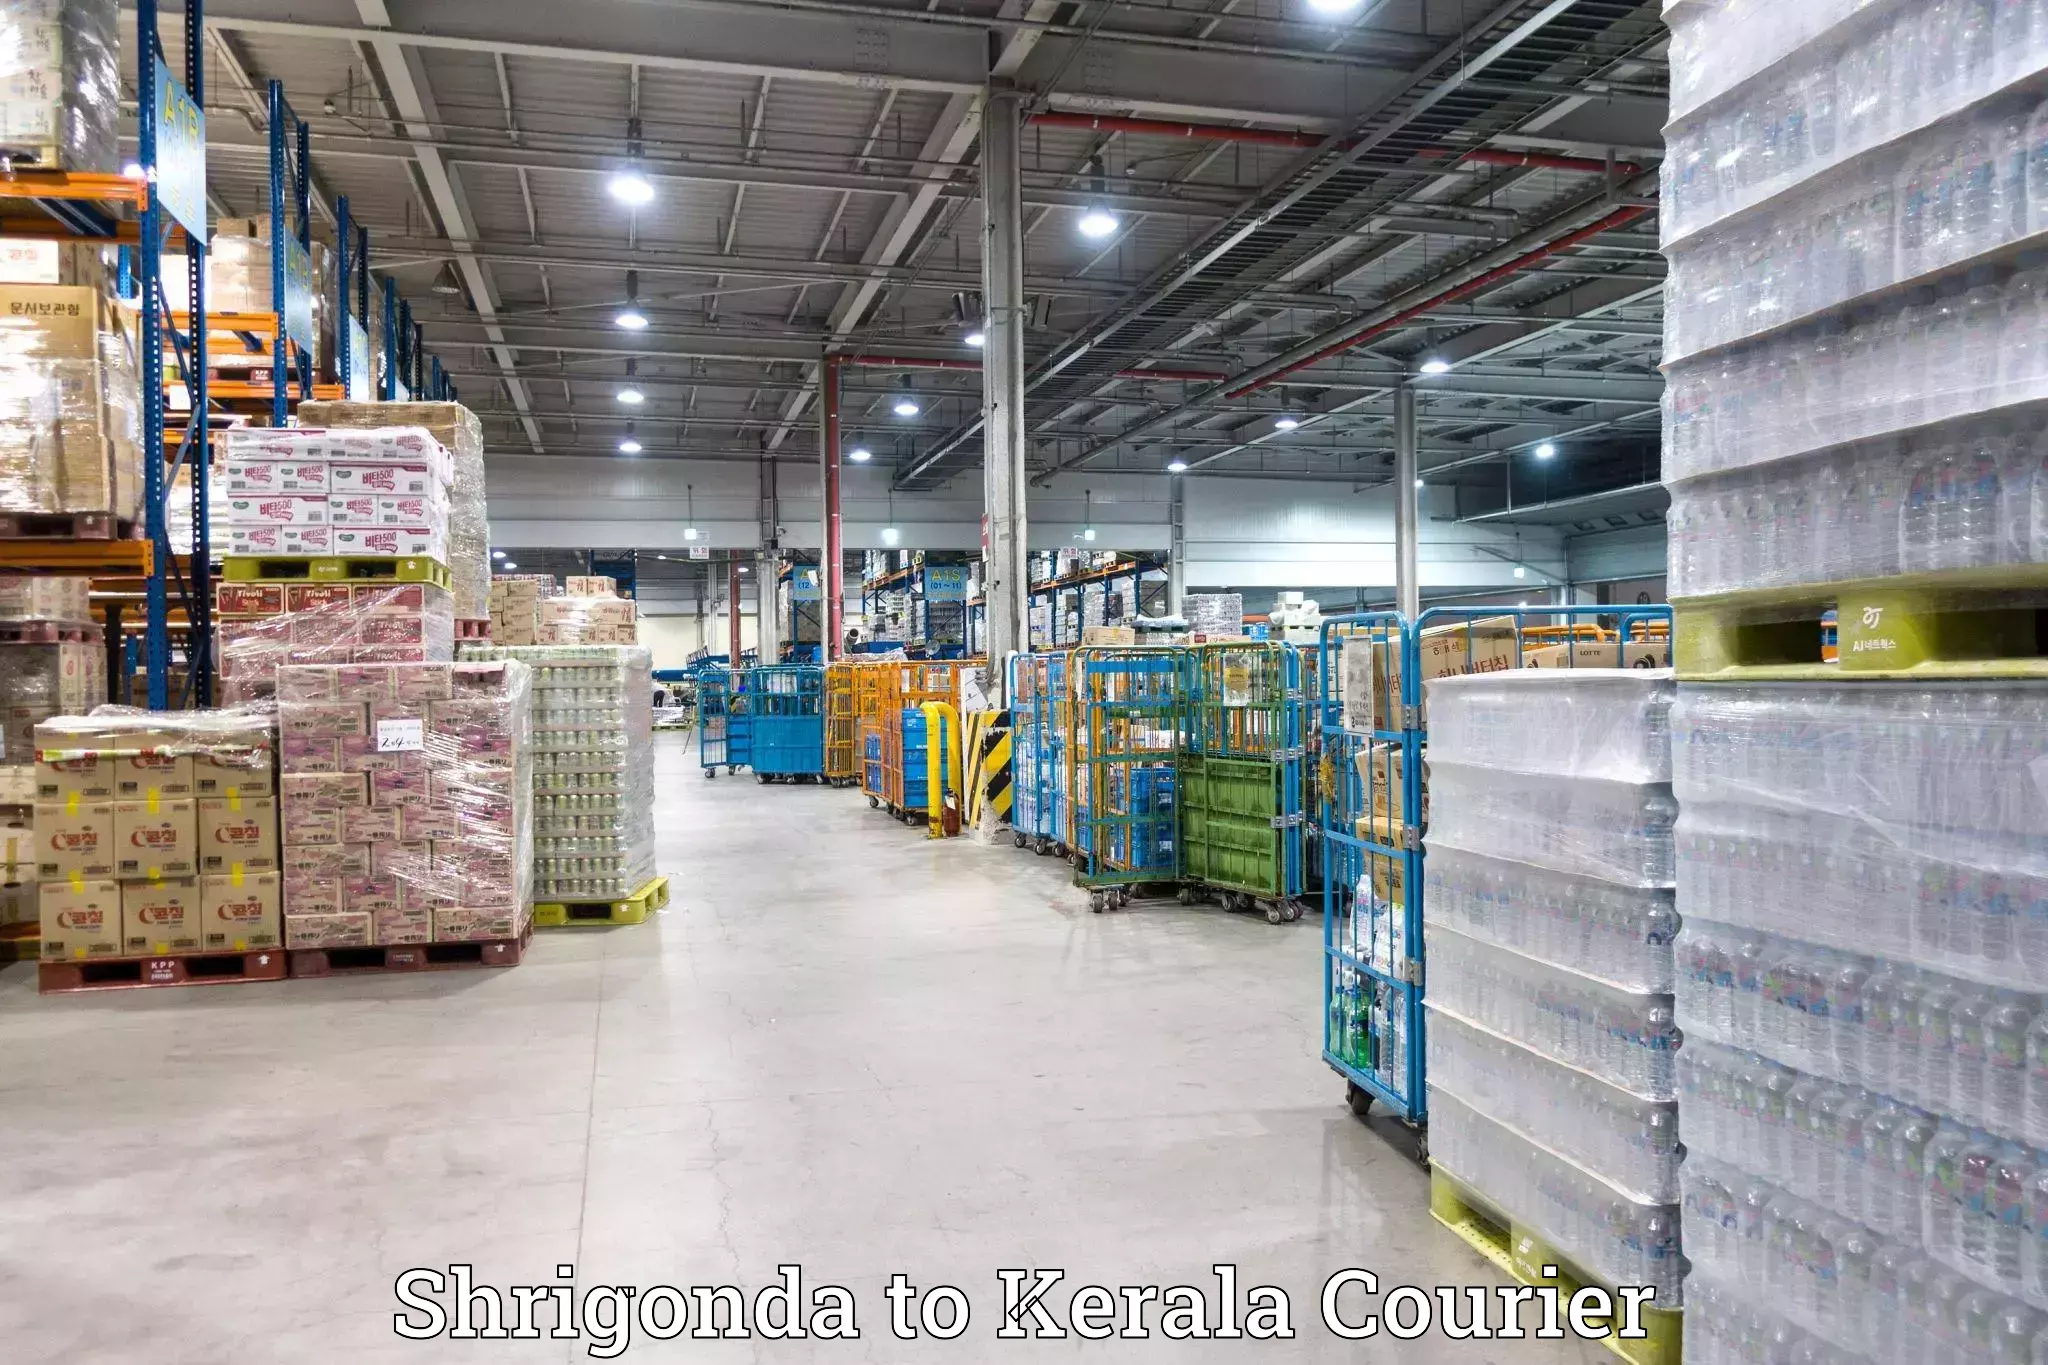 Professional moving company Shrigonda to Kattappana